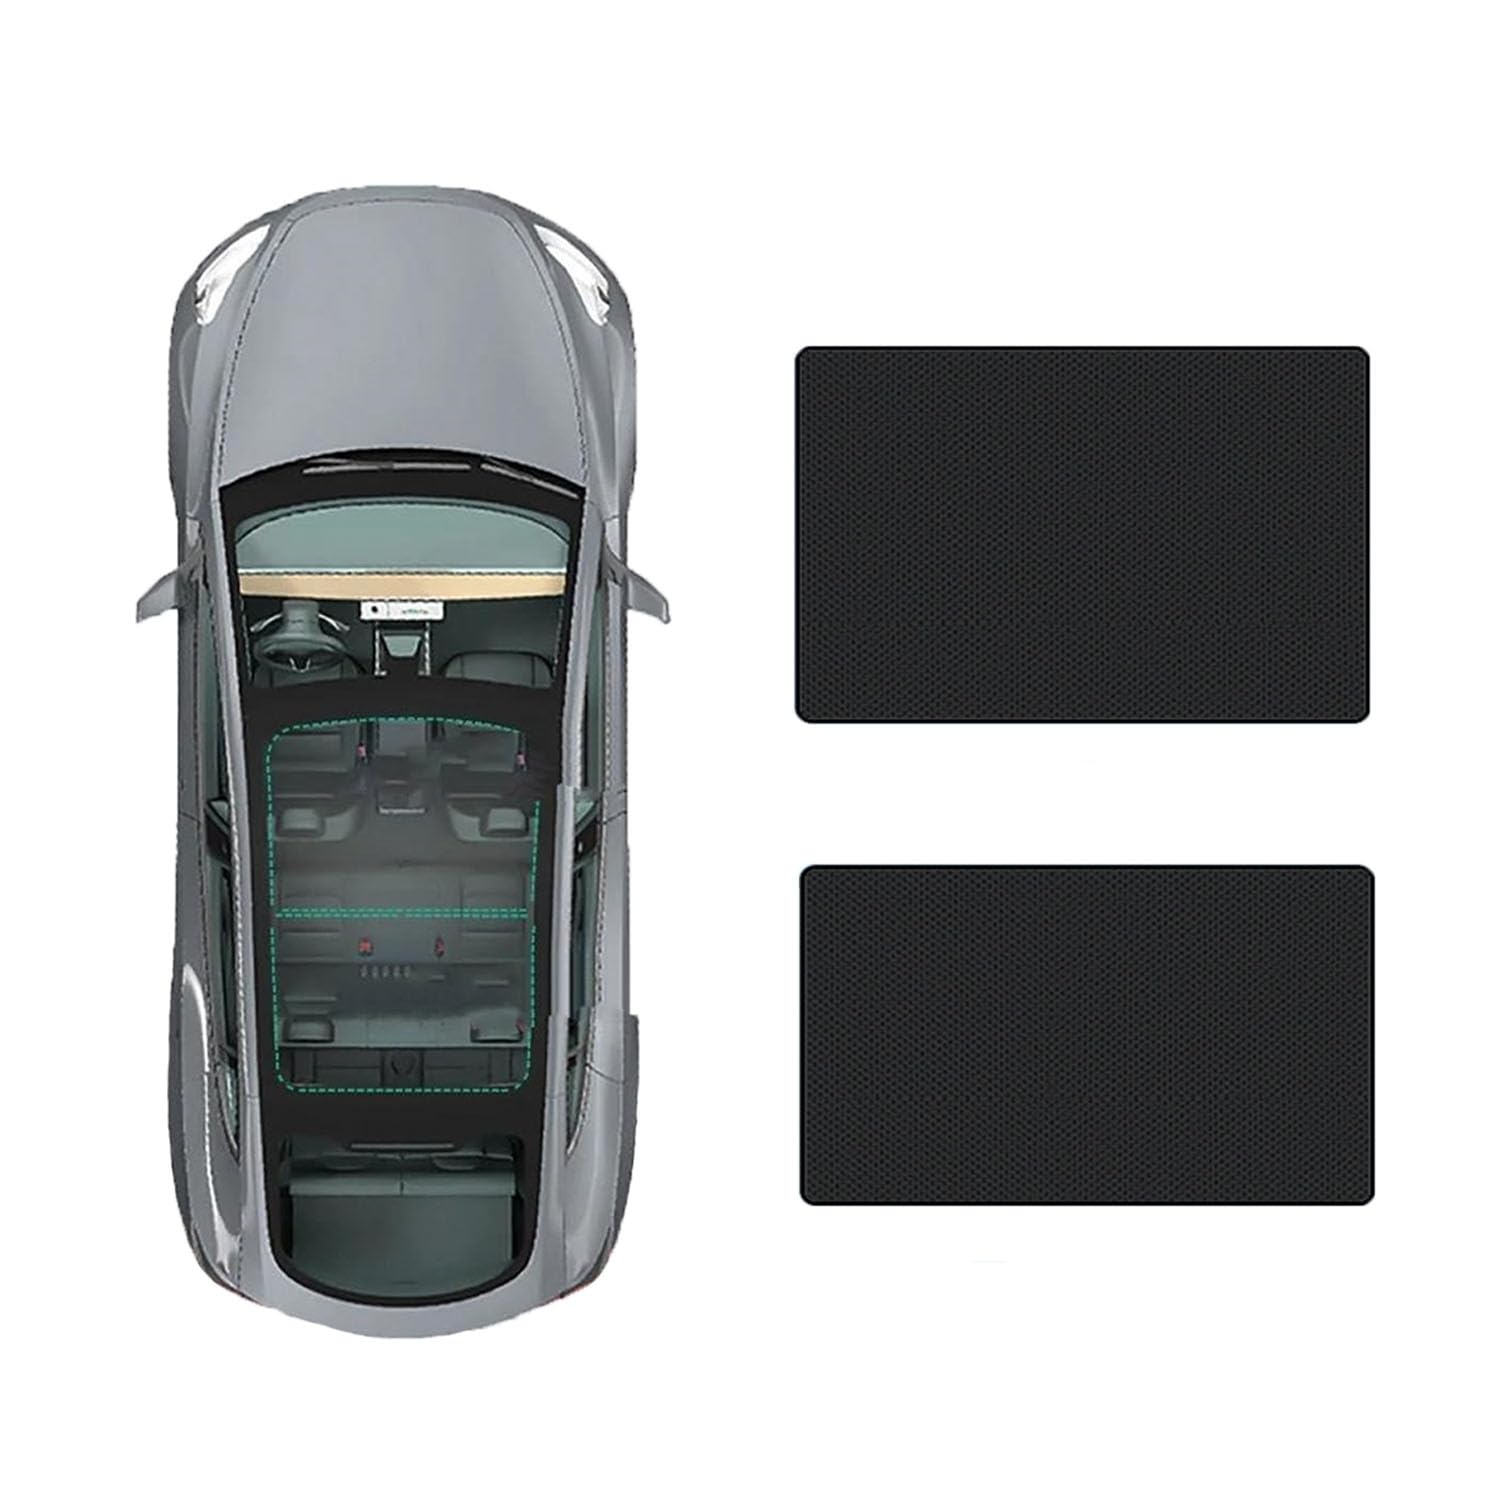 Auto-Schiebedach-Beschattung Für VW Jetta VS7 2020-,Auto Schiebedach Sonnenschutz Dachfenster Dach Wärme Isolierung Beschattung Innen,C-Black regular Style von LiuROSE